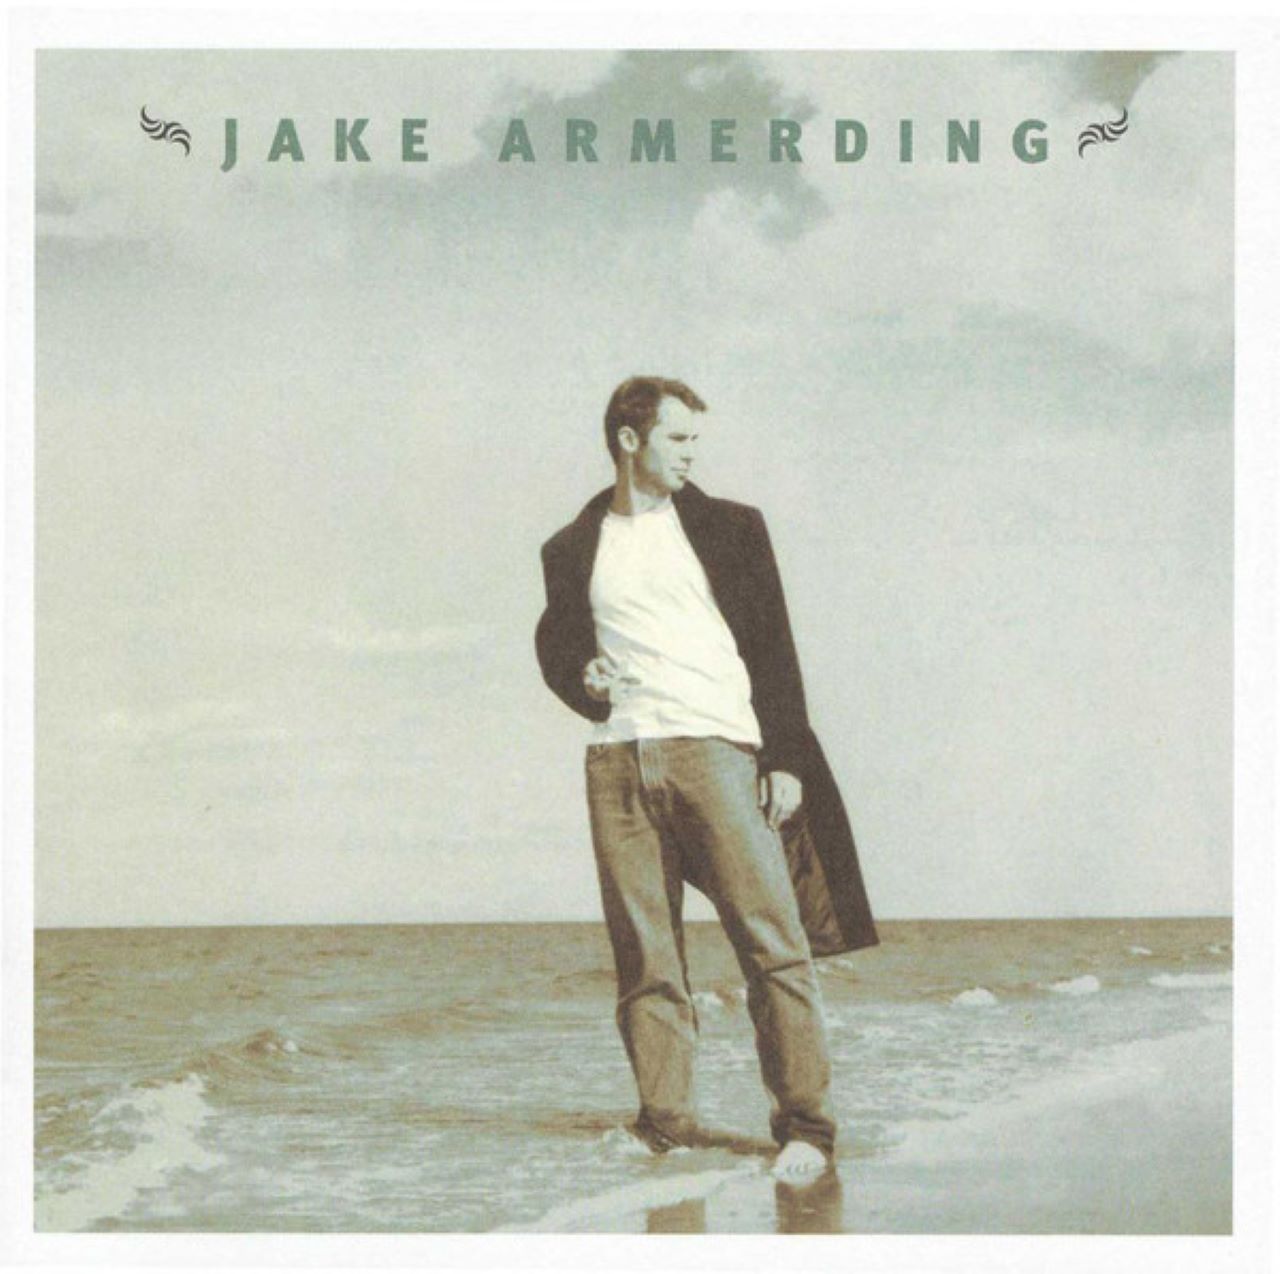 Jake Armerding - Jake Armerding cover album